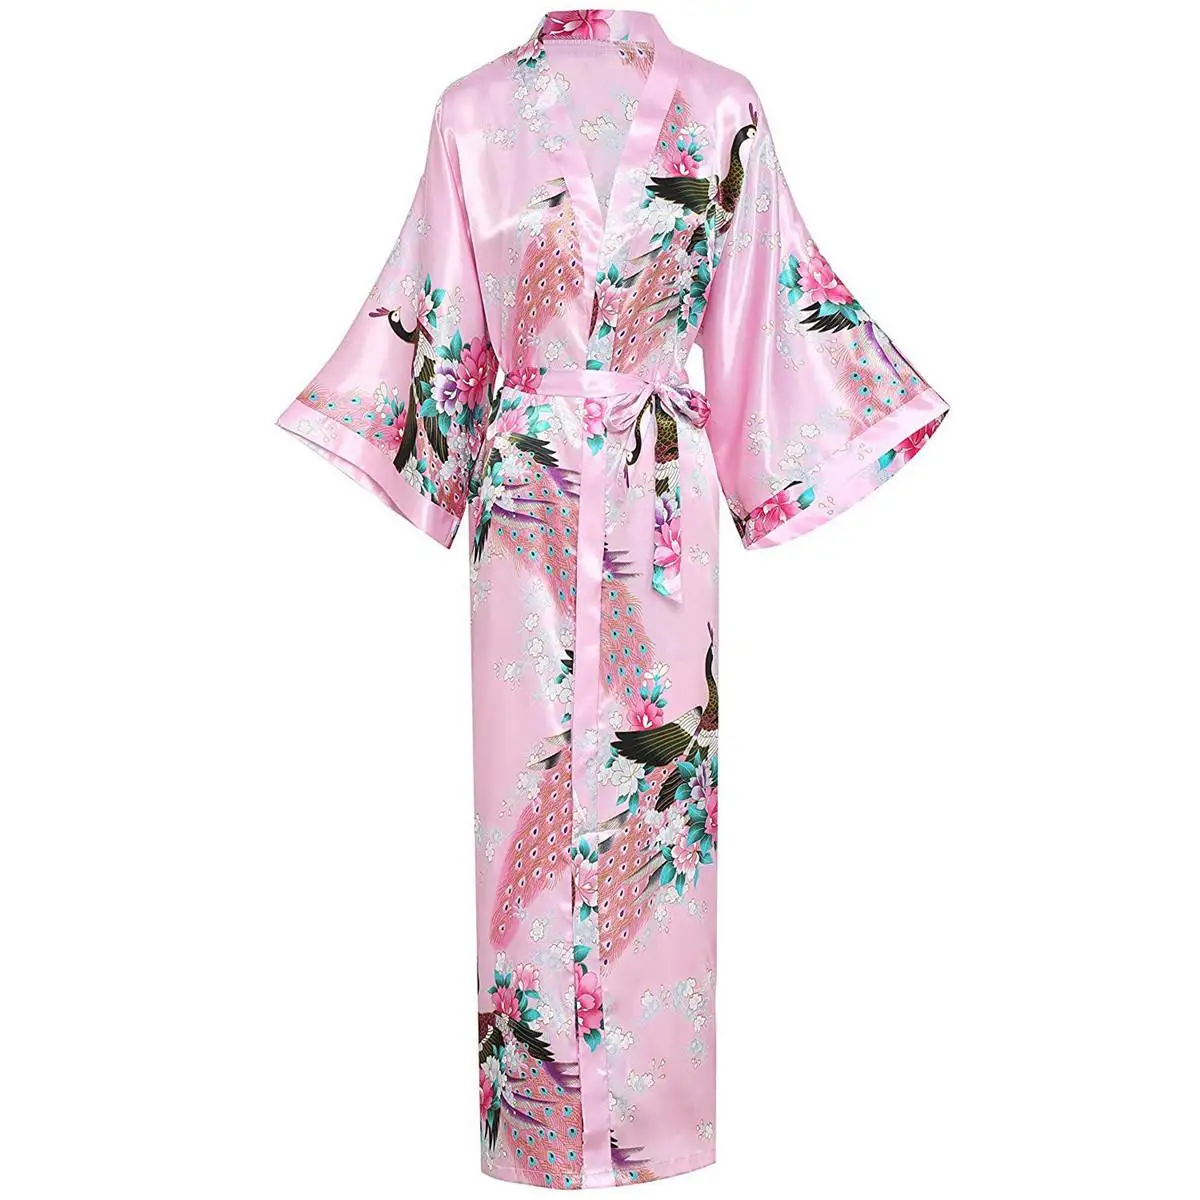 Весенний халат для женщин с поясом кимоно купальный халат атласный длинный халат для сна 3/4 рукав неглиже большой размер 3XL-6XL - Цвет: Pink 2